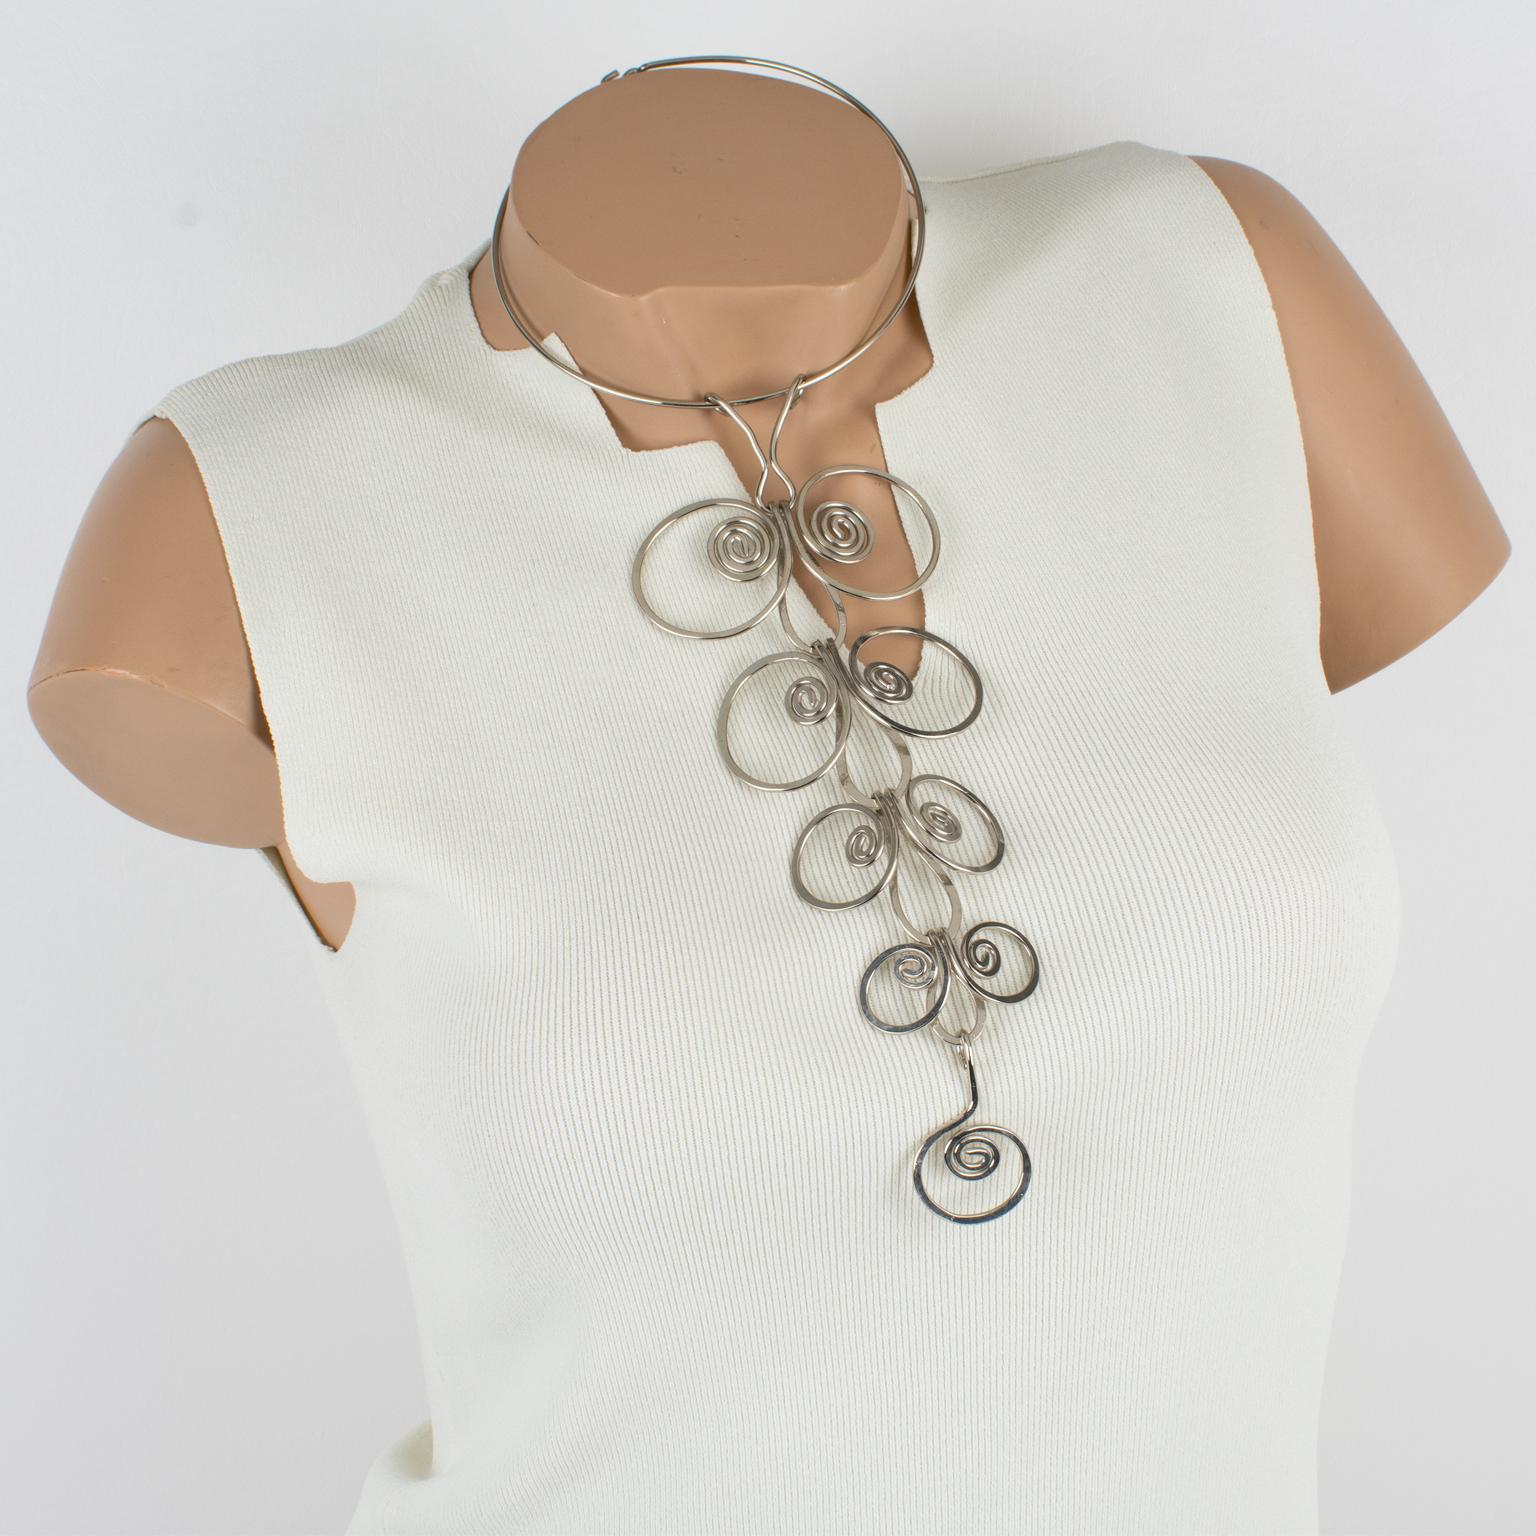 Un étonnant long collier moderniste en métal NO AGE avec un pendentif géométrique des années 1970, rappelant le travail de Paco Rabanne. La pièce se compose d'une bande rigide en métal chromé autour du cou, ornée d'un impressionnant pendentif